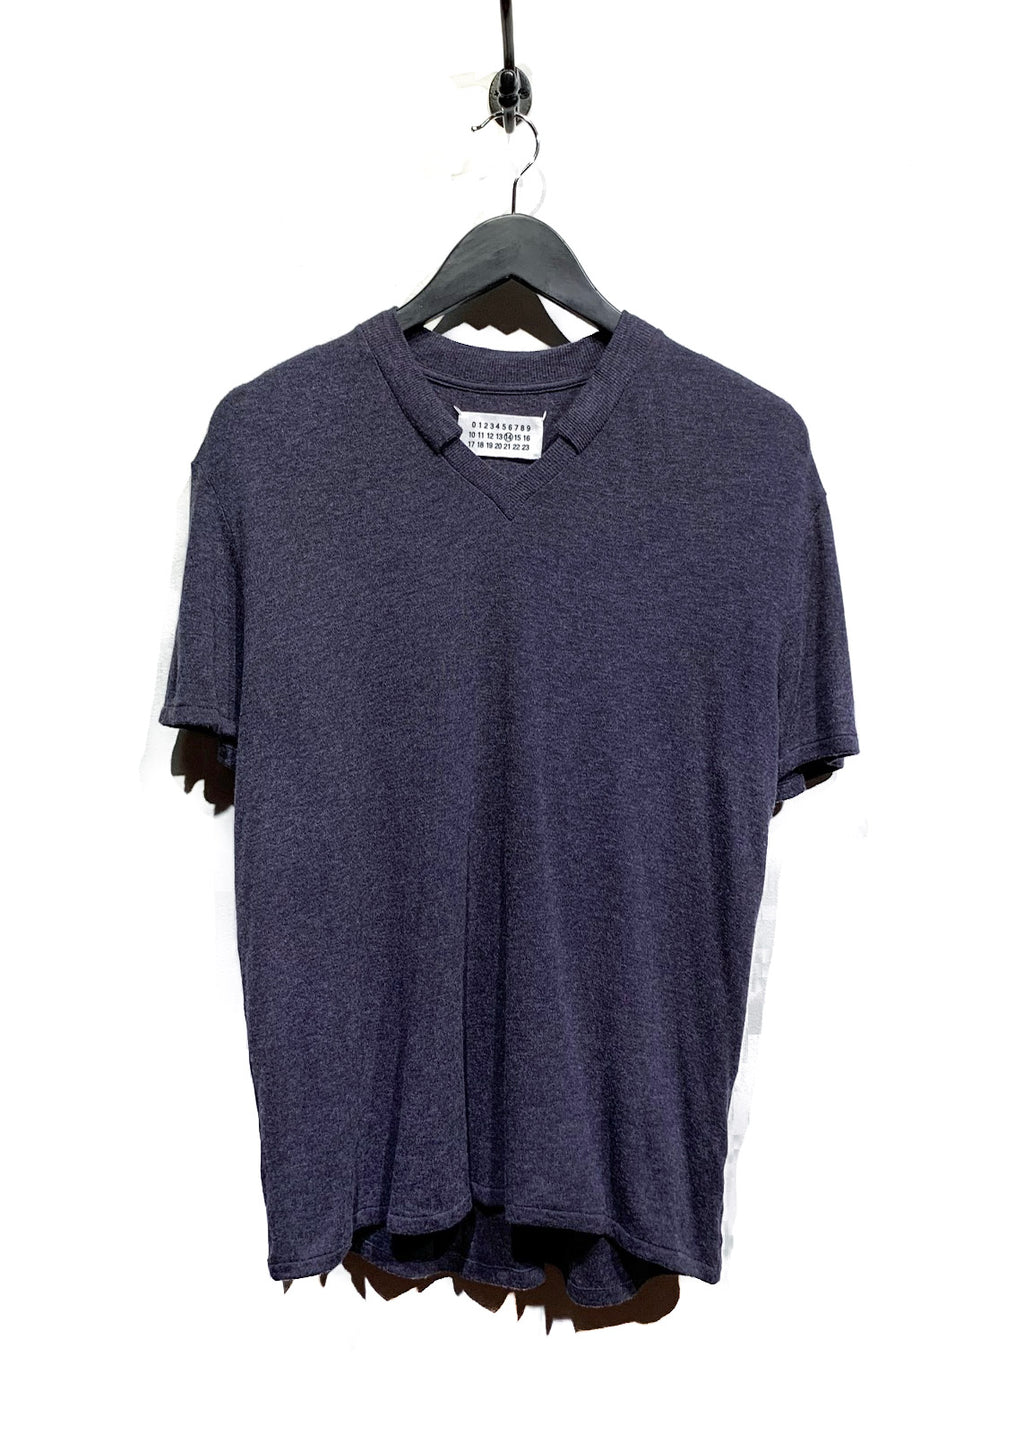 T-shirt en tricot Maison Margiela mélange de laine et viscose bleu gris